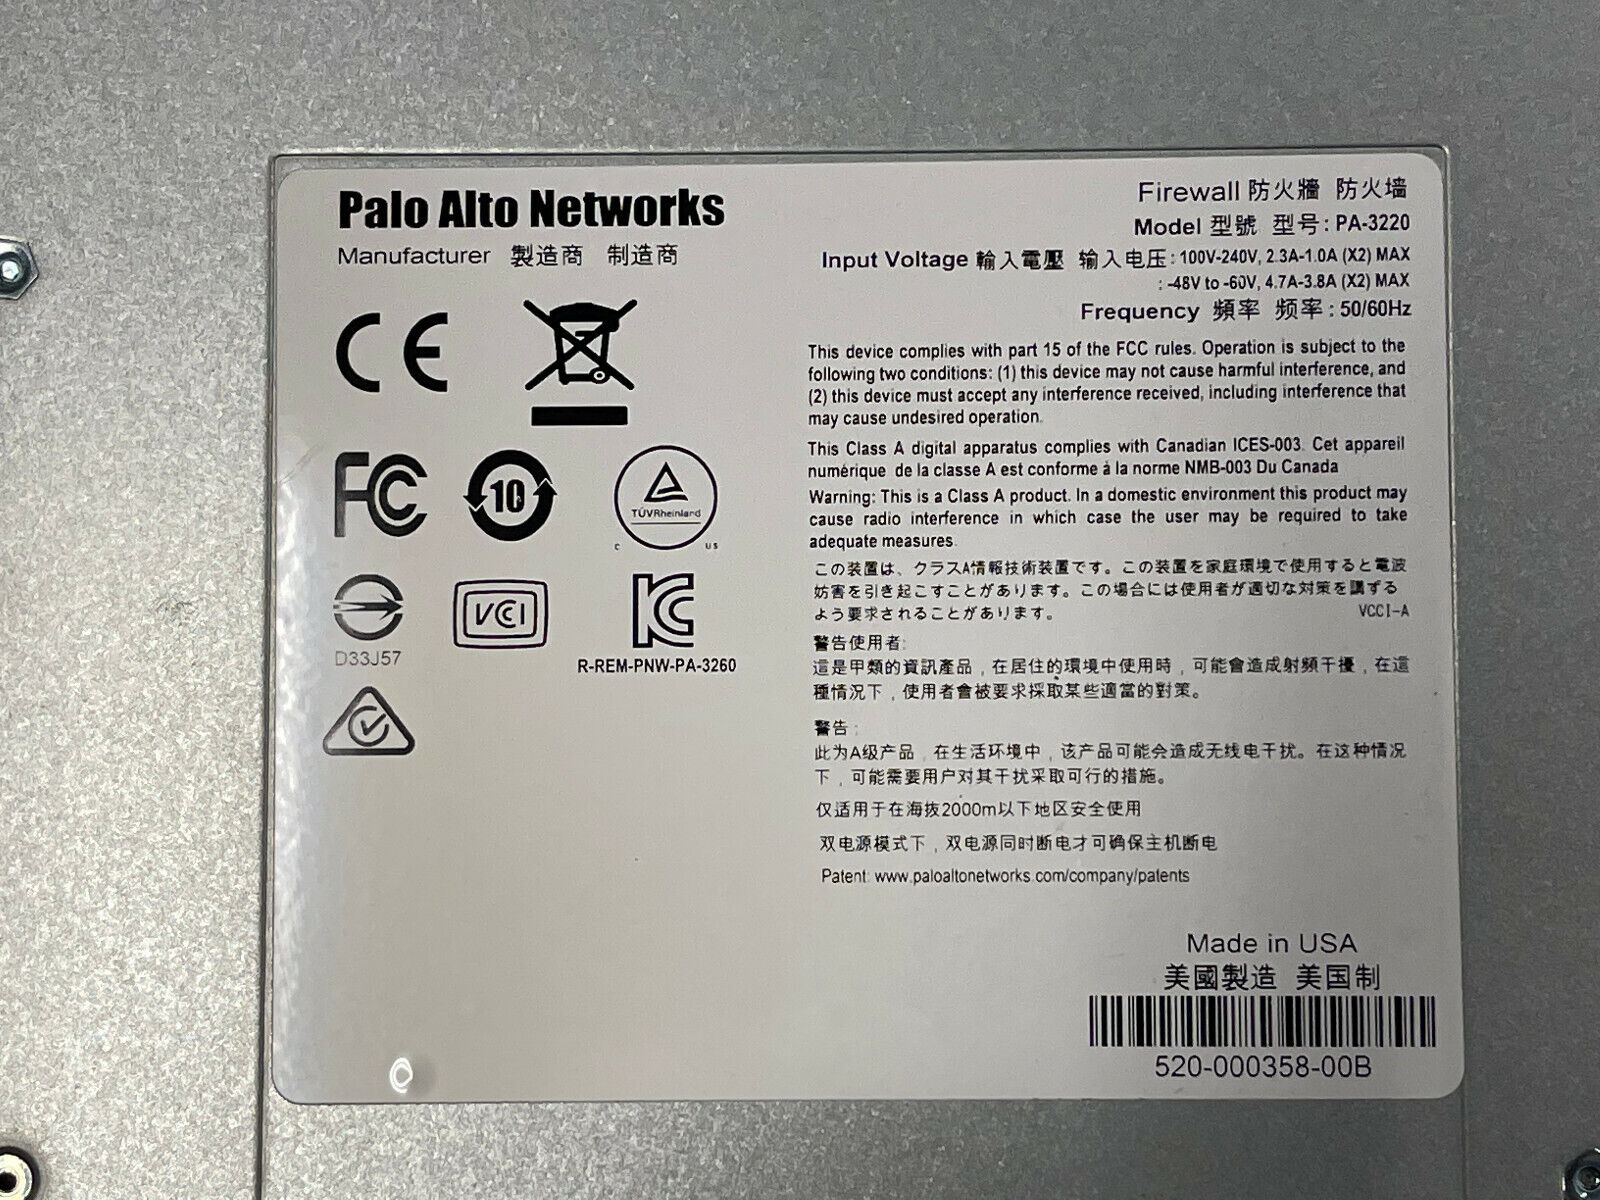 Palo Alto PA-3220 Next-Generation Firewall VPN Gateway 12x RJ-45 8x SFP+ Ears